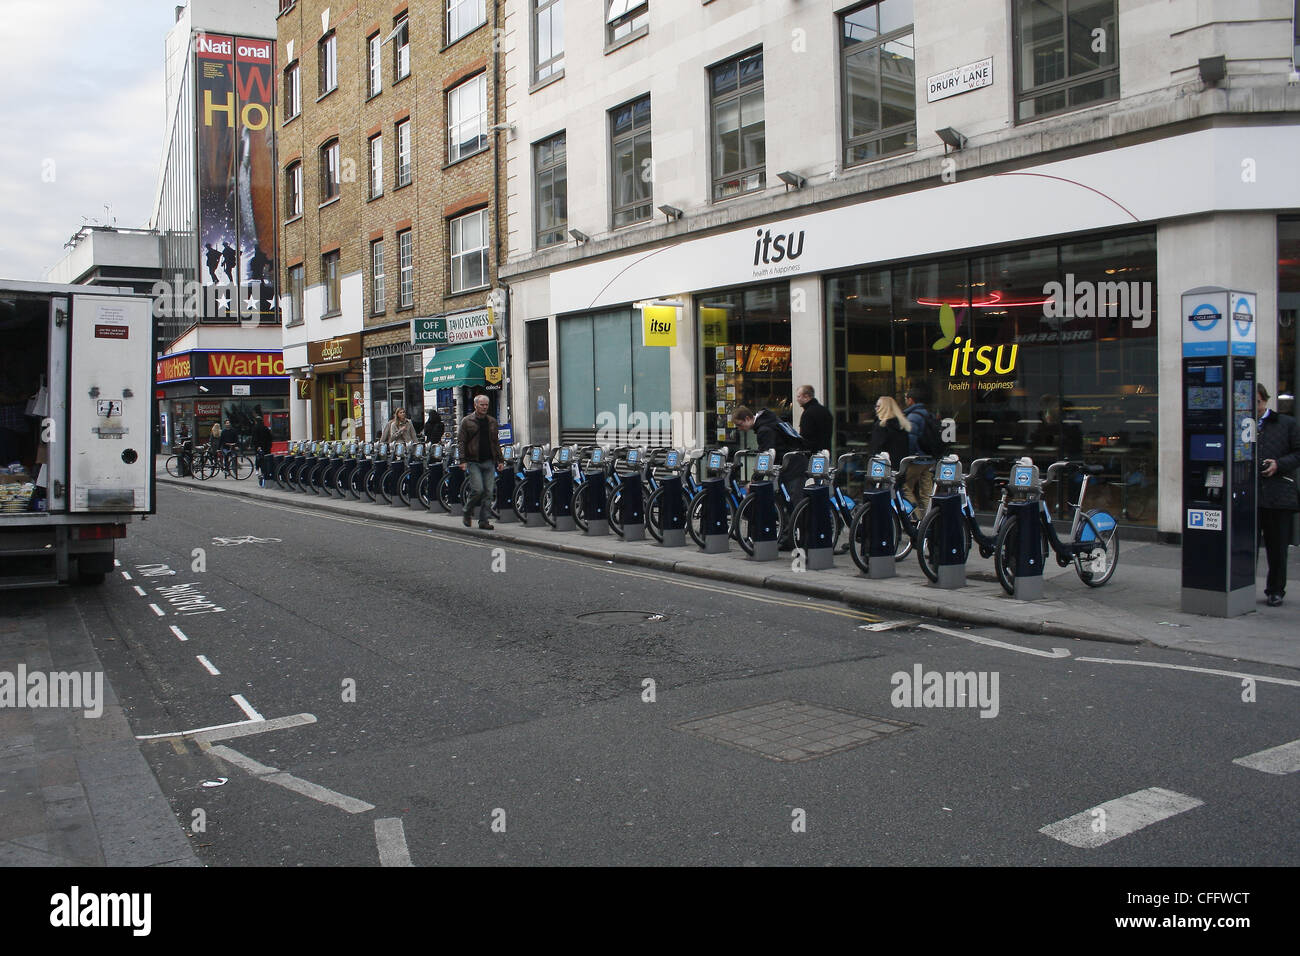 Barclays bike schema nella parte anteriore del ristorante Itsu. Drury Lane, London, England, Regno Unito WC2 Foto Stock